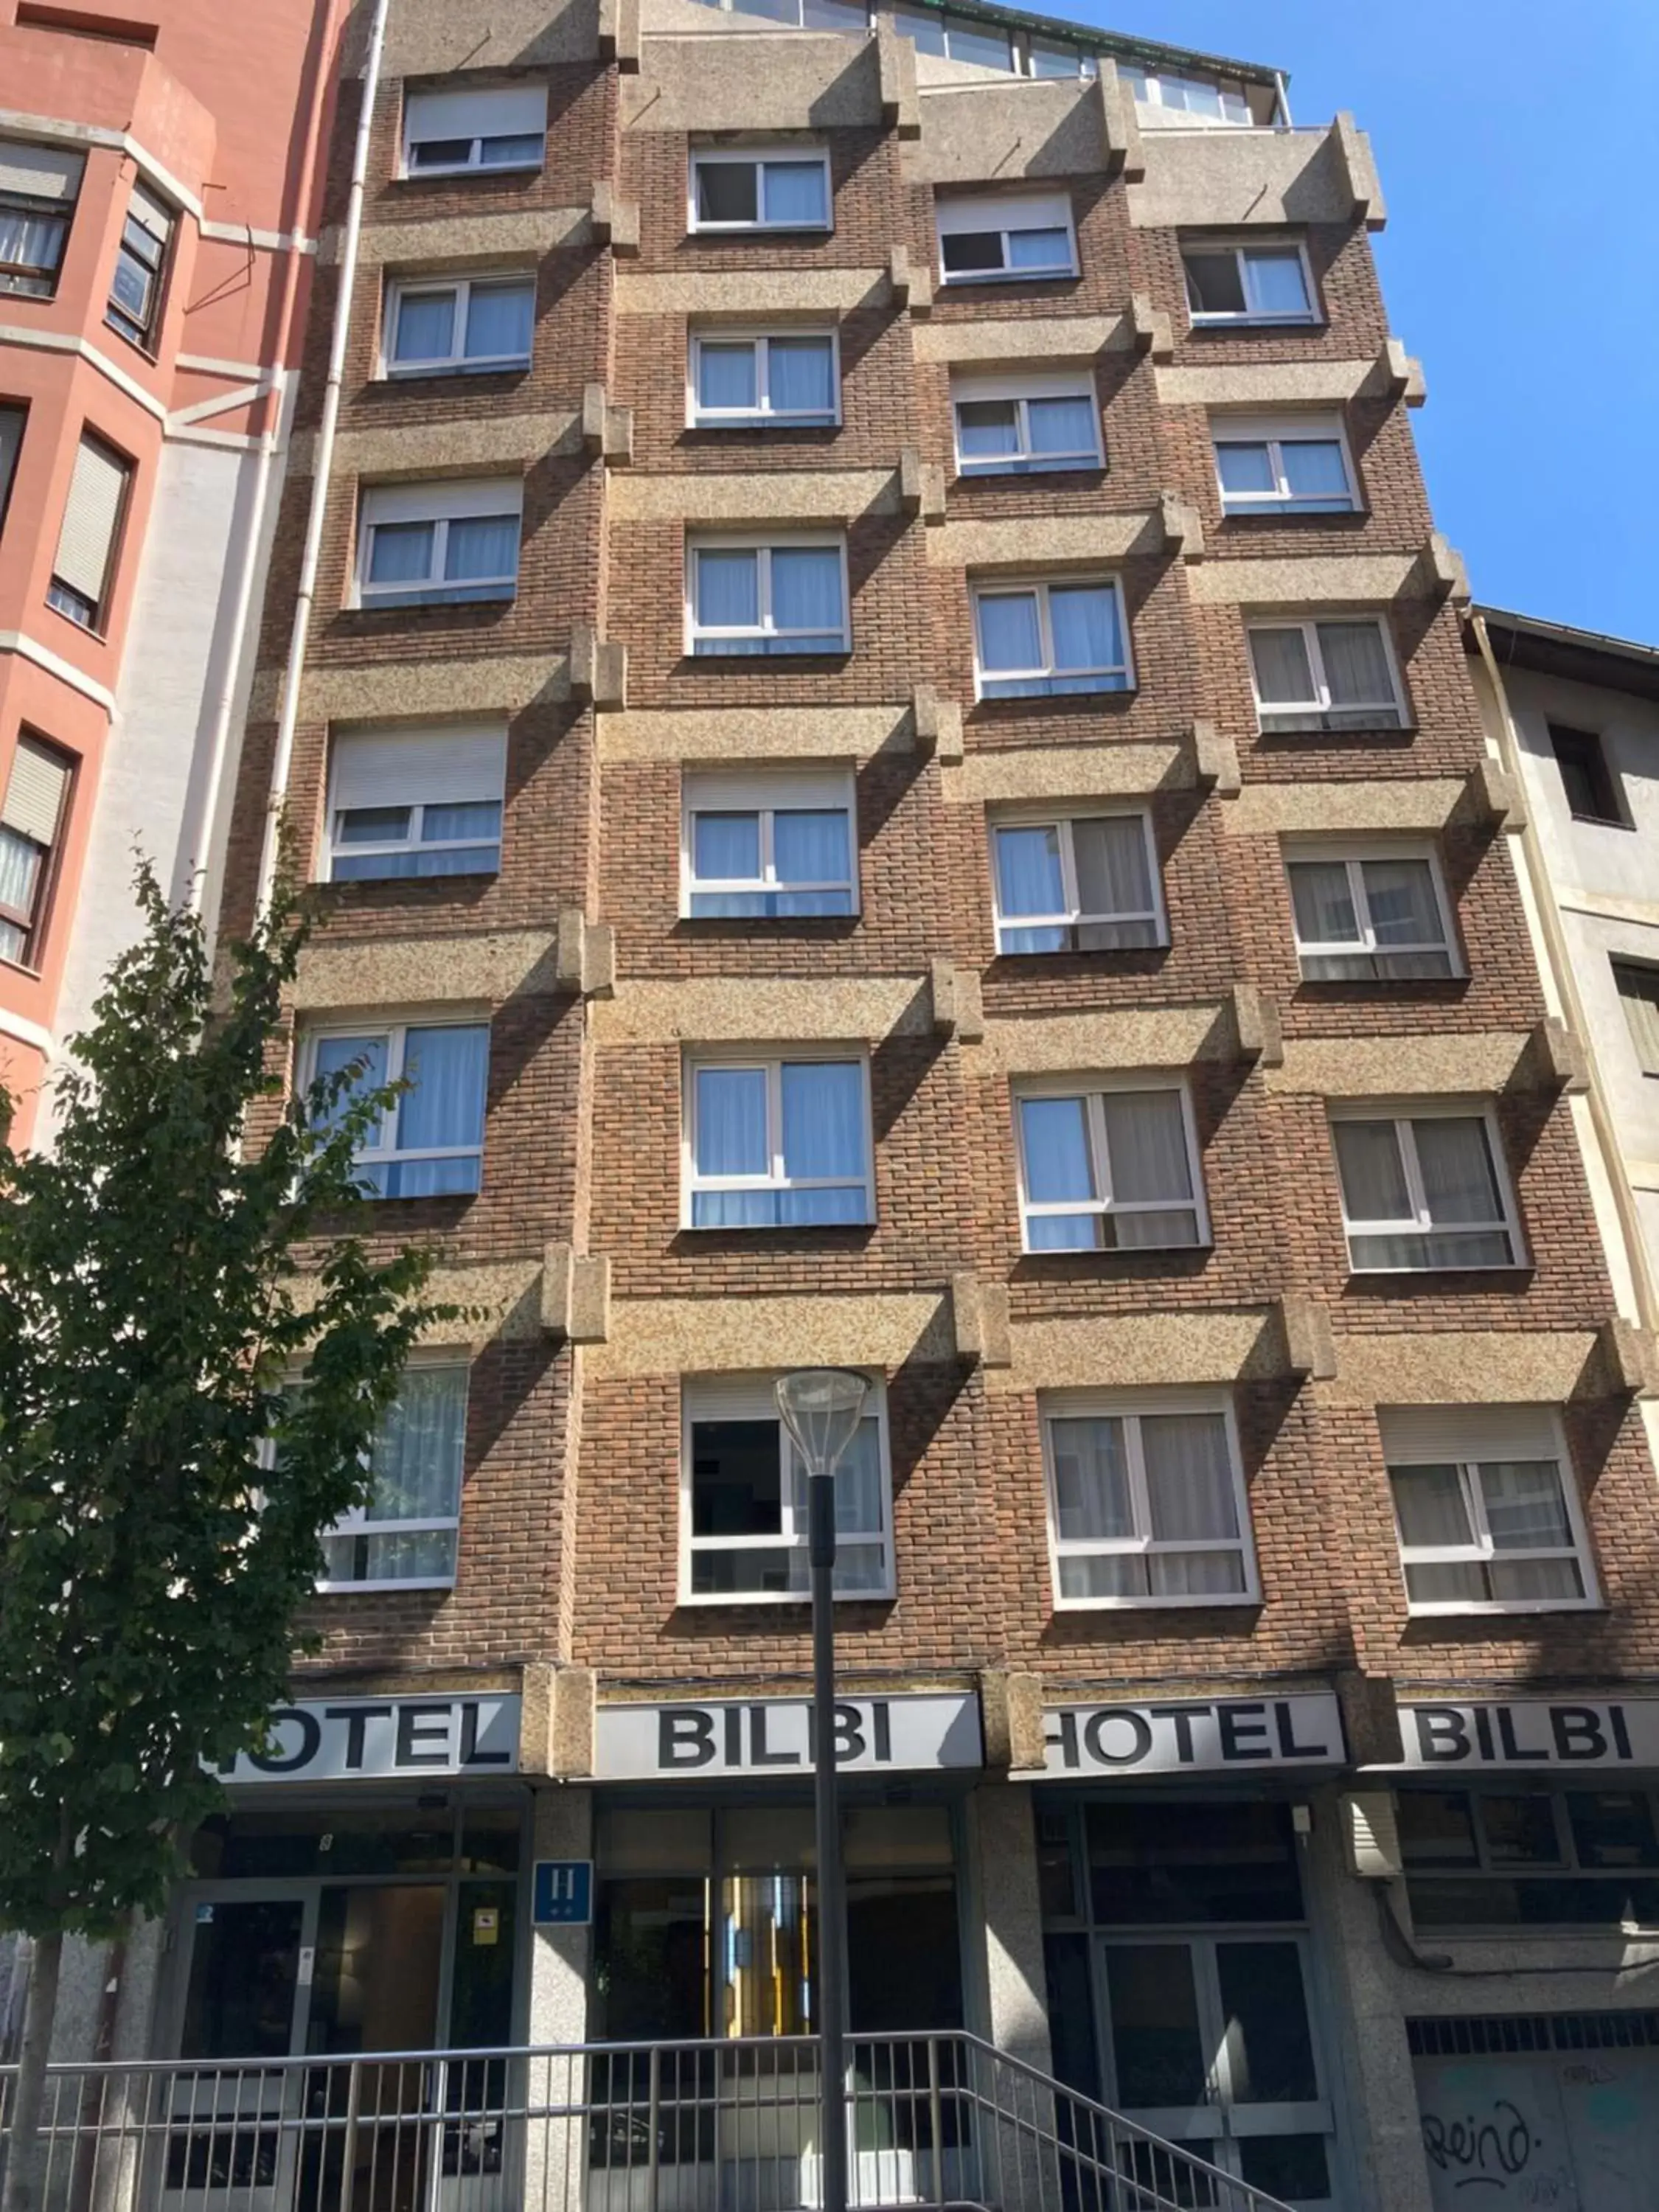 Property Building in Hotel Bilbi